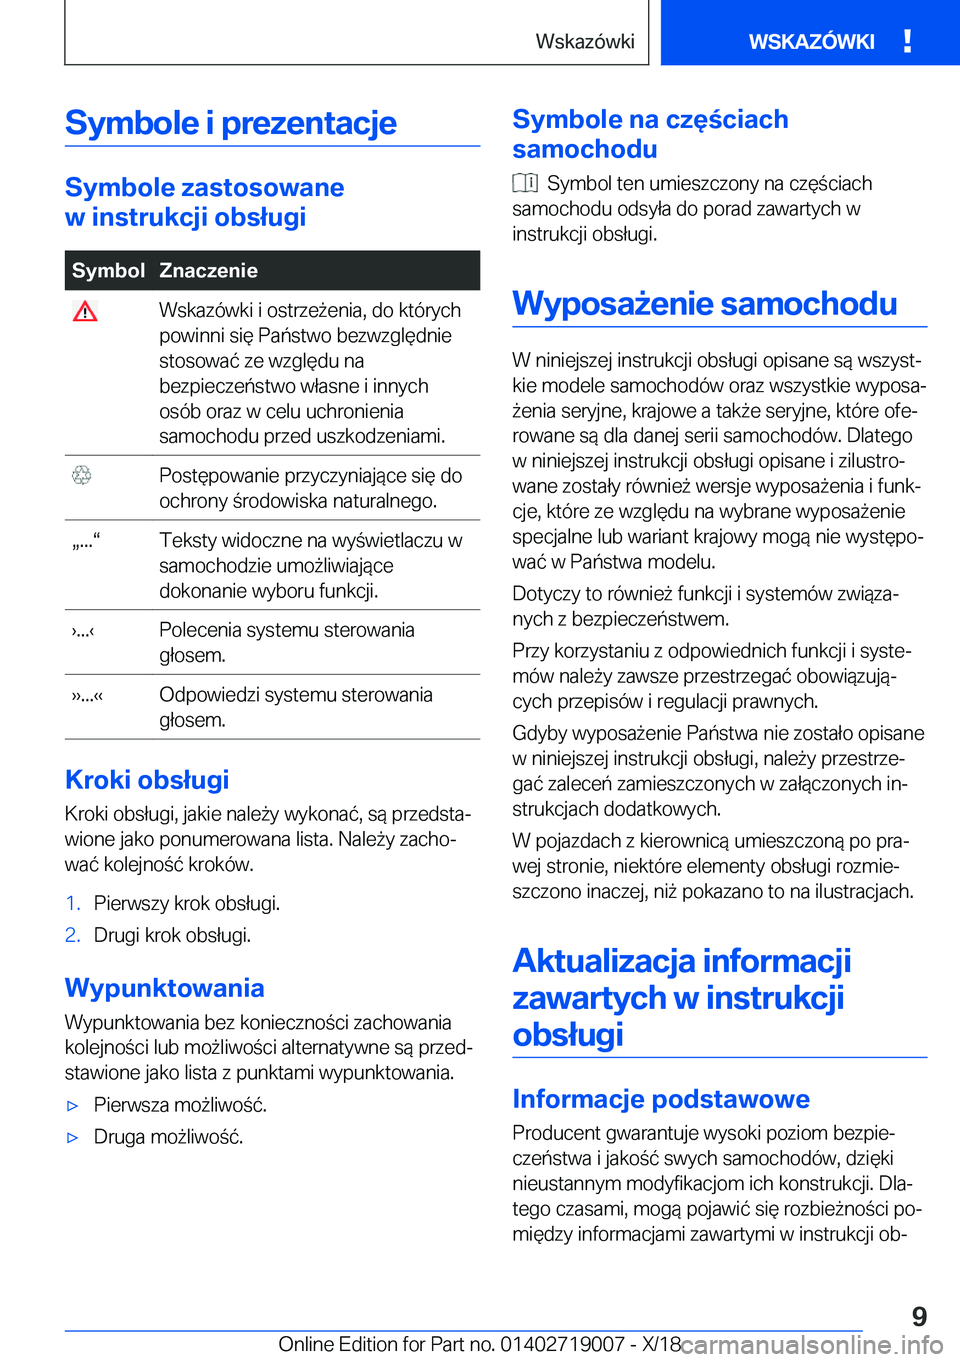 BMW Z4 2019  Instrukcja obsługi (in Polish) �S�y�m�b�o�l�e��i��p�r�e�z�e�n�t�a�c�j�e
�S�y�m�b�o�l�e��z�a�s�t�o�s�o�w�a�n�e
�w��i�n�s�t�r�u�k�c�j�i��o�b�s�ł�u�g�i
�S�y�m�b�o�l�Z�n�a�c�z�e�n�i�e��W�s�k�a�z�